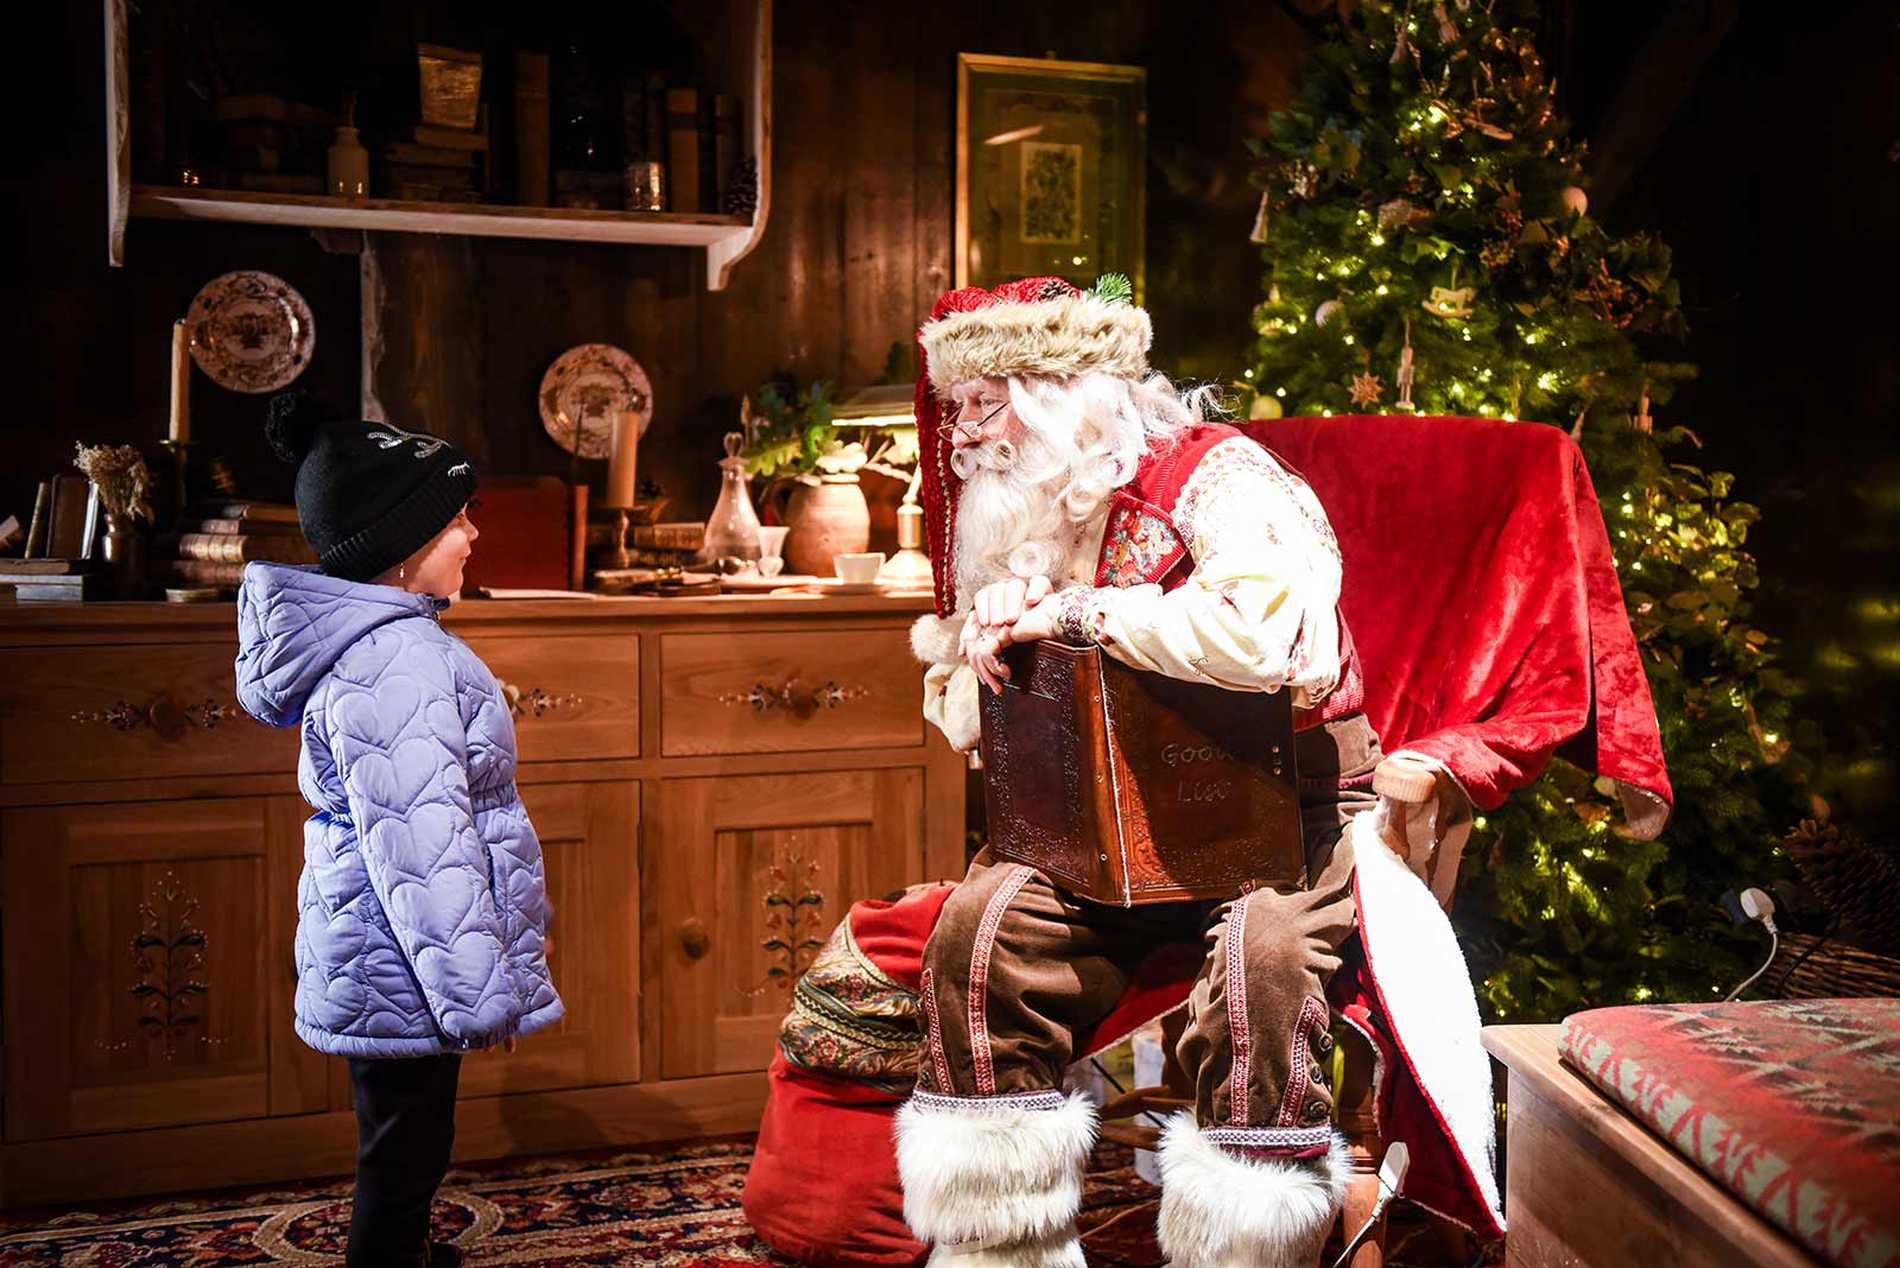 Julia meeting Santa at Lapland UK.